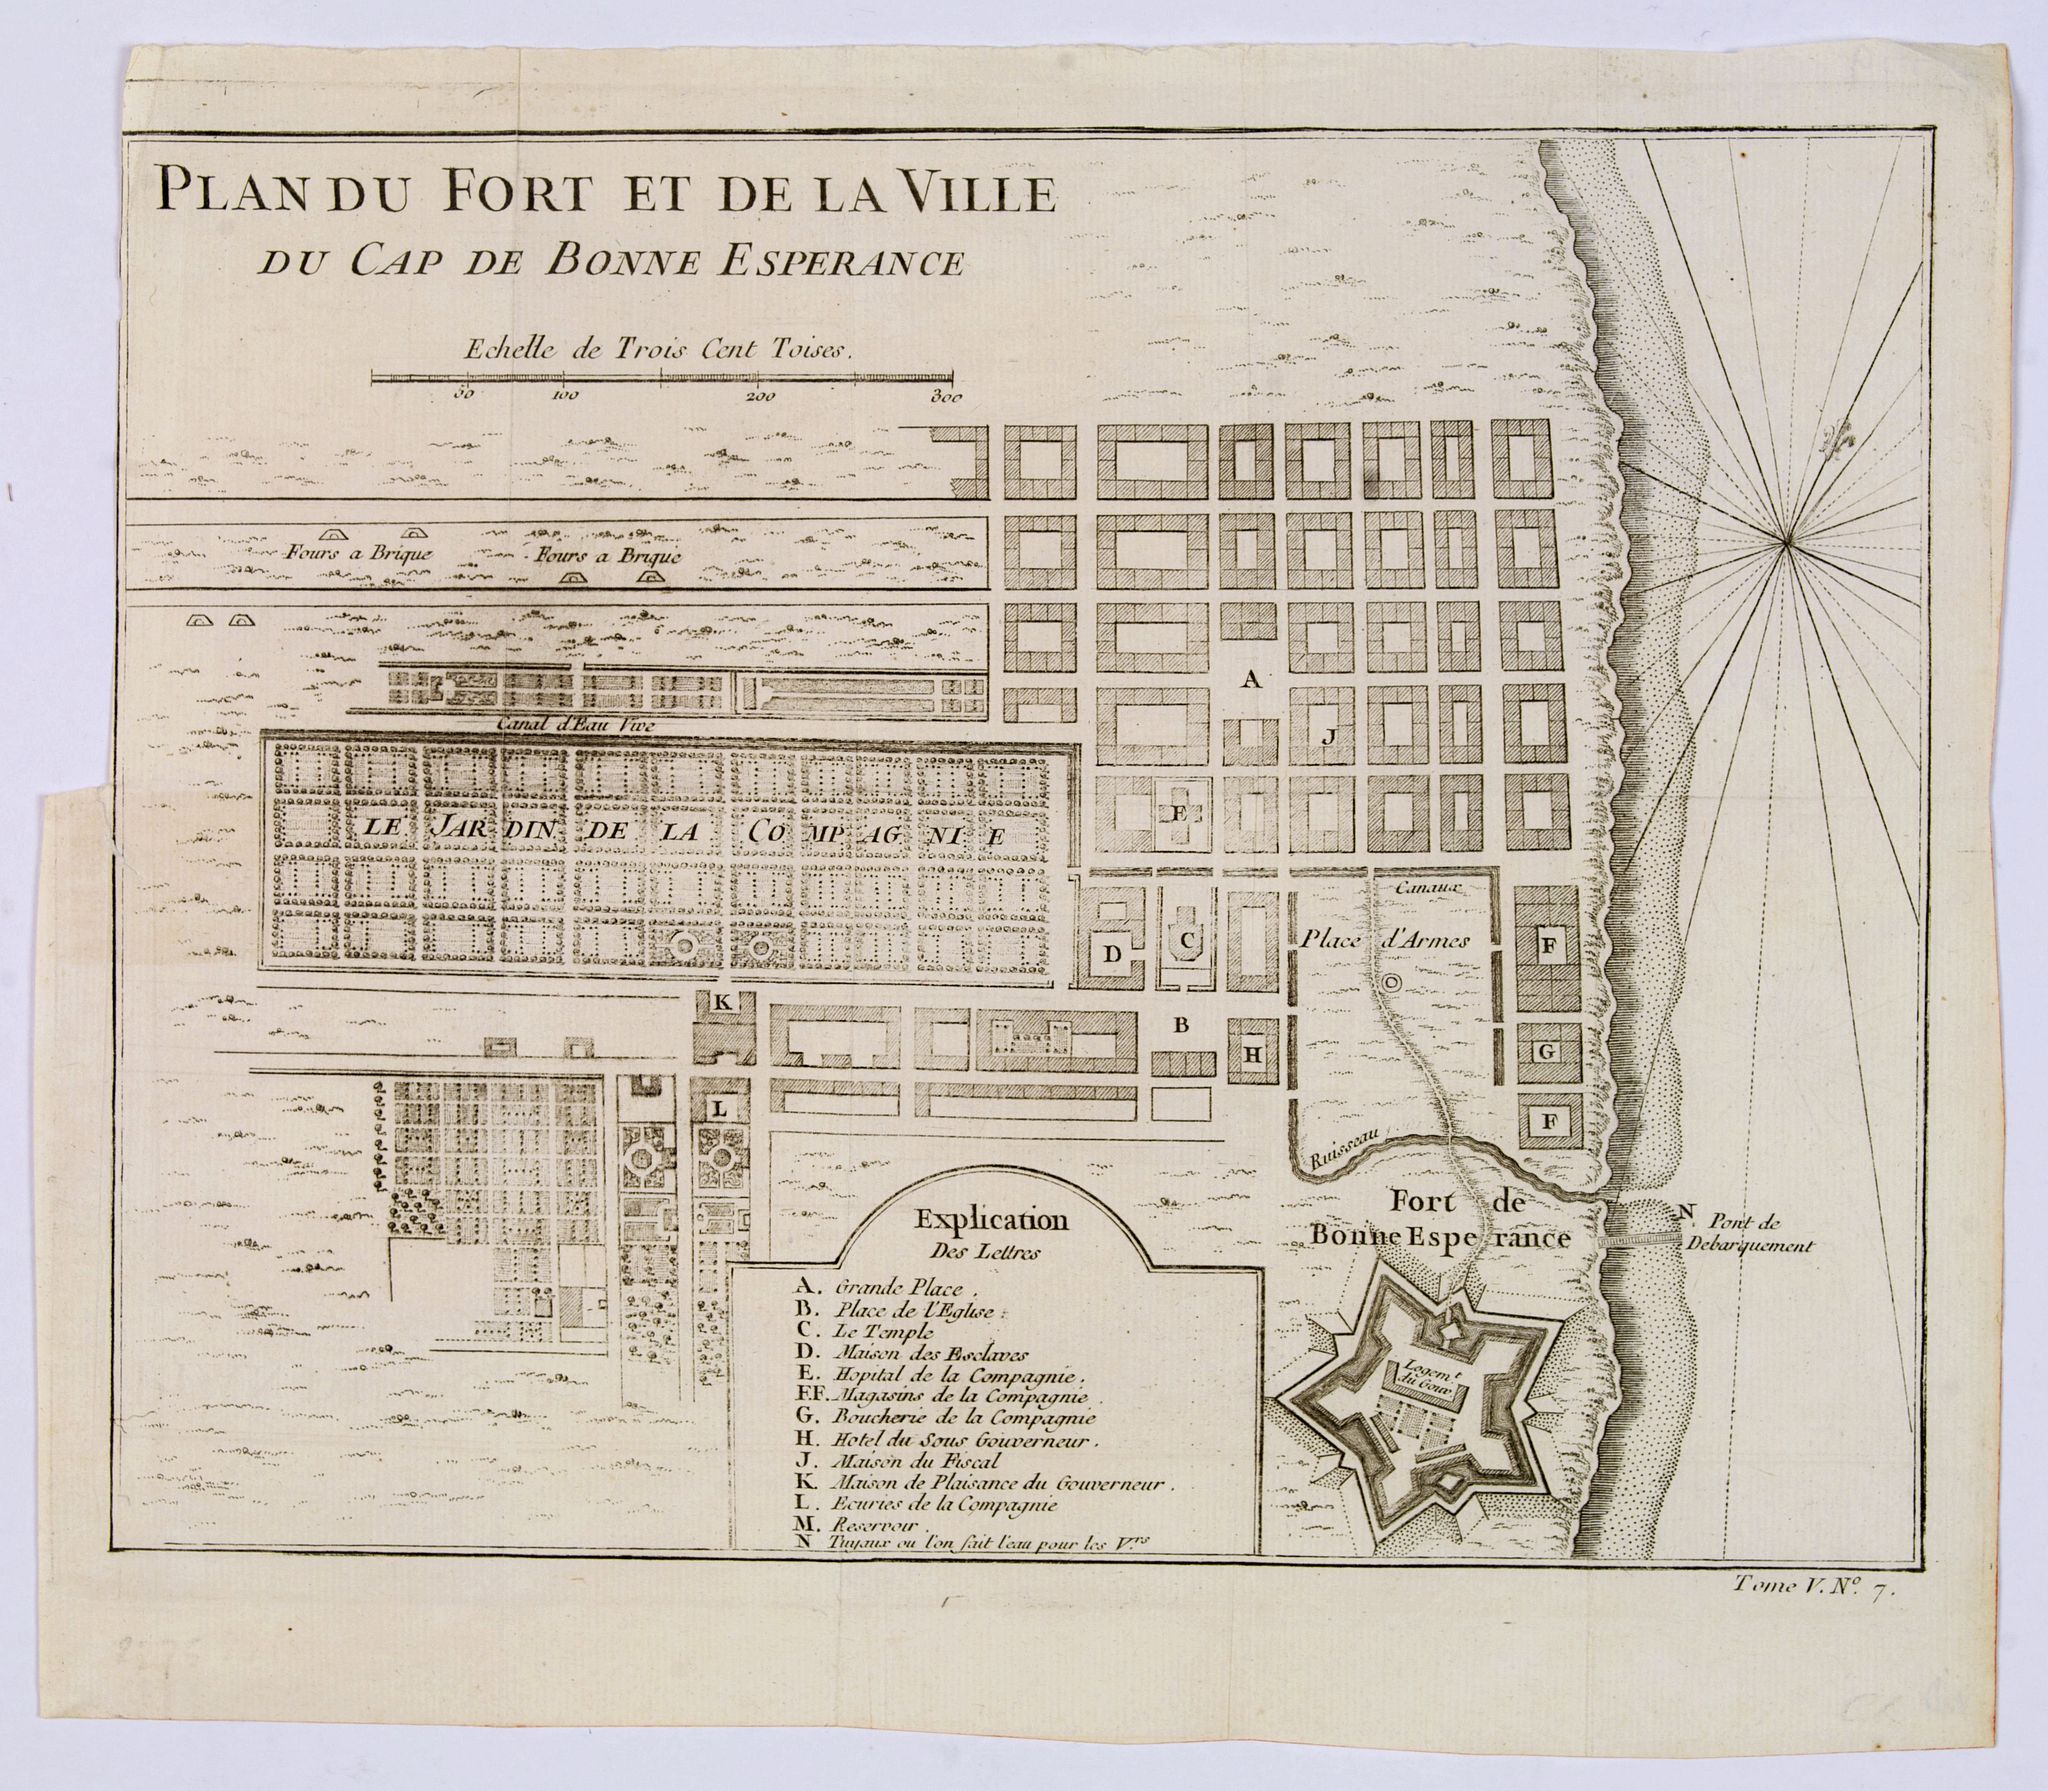 Plan du Fort et de la ville du Cap de Bonne Esperance.